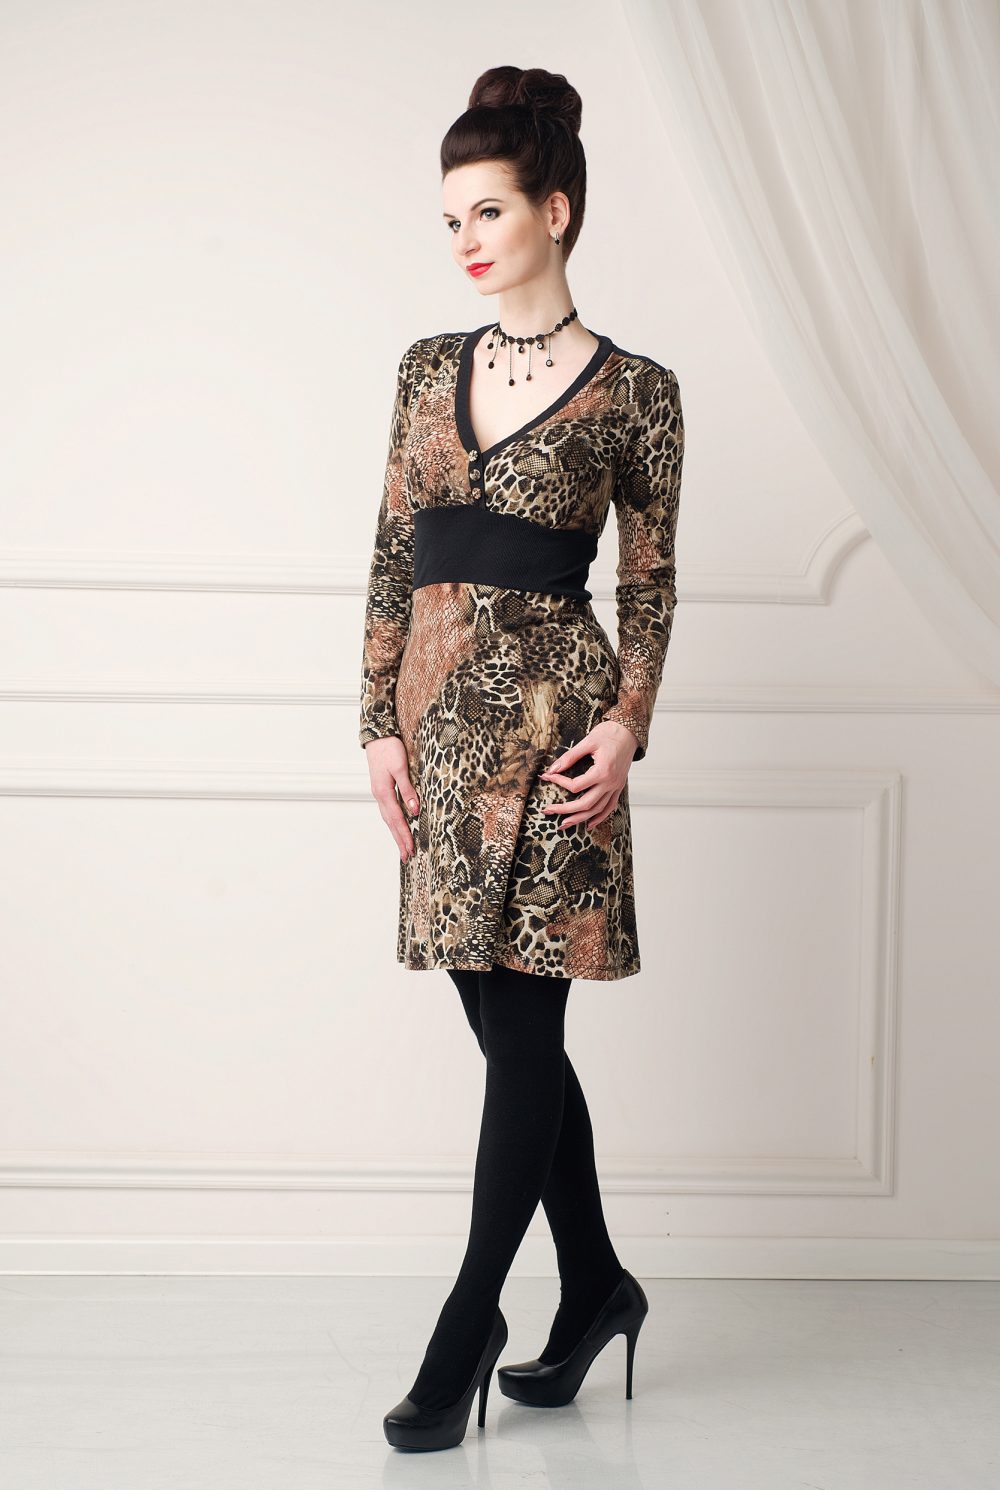 Трикотажное леопардовое платье «Хищные коготки» от дизайнера Любовь Джбааи 1